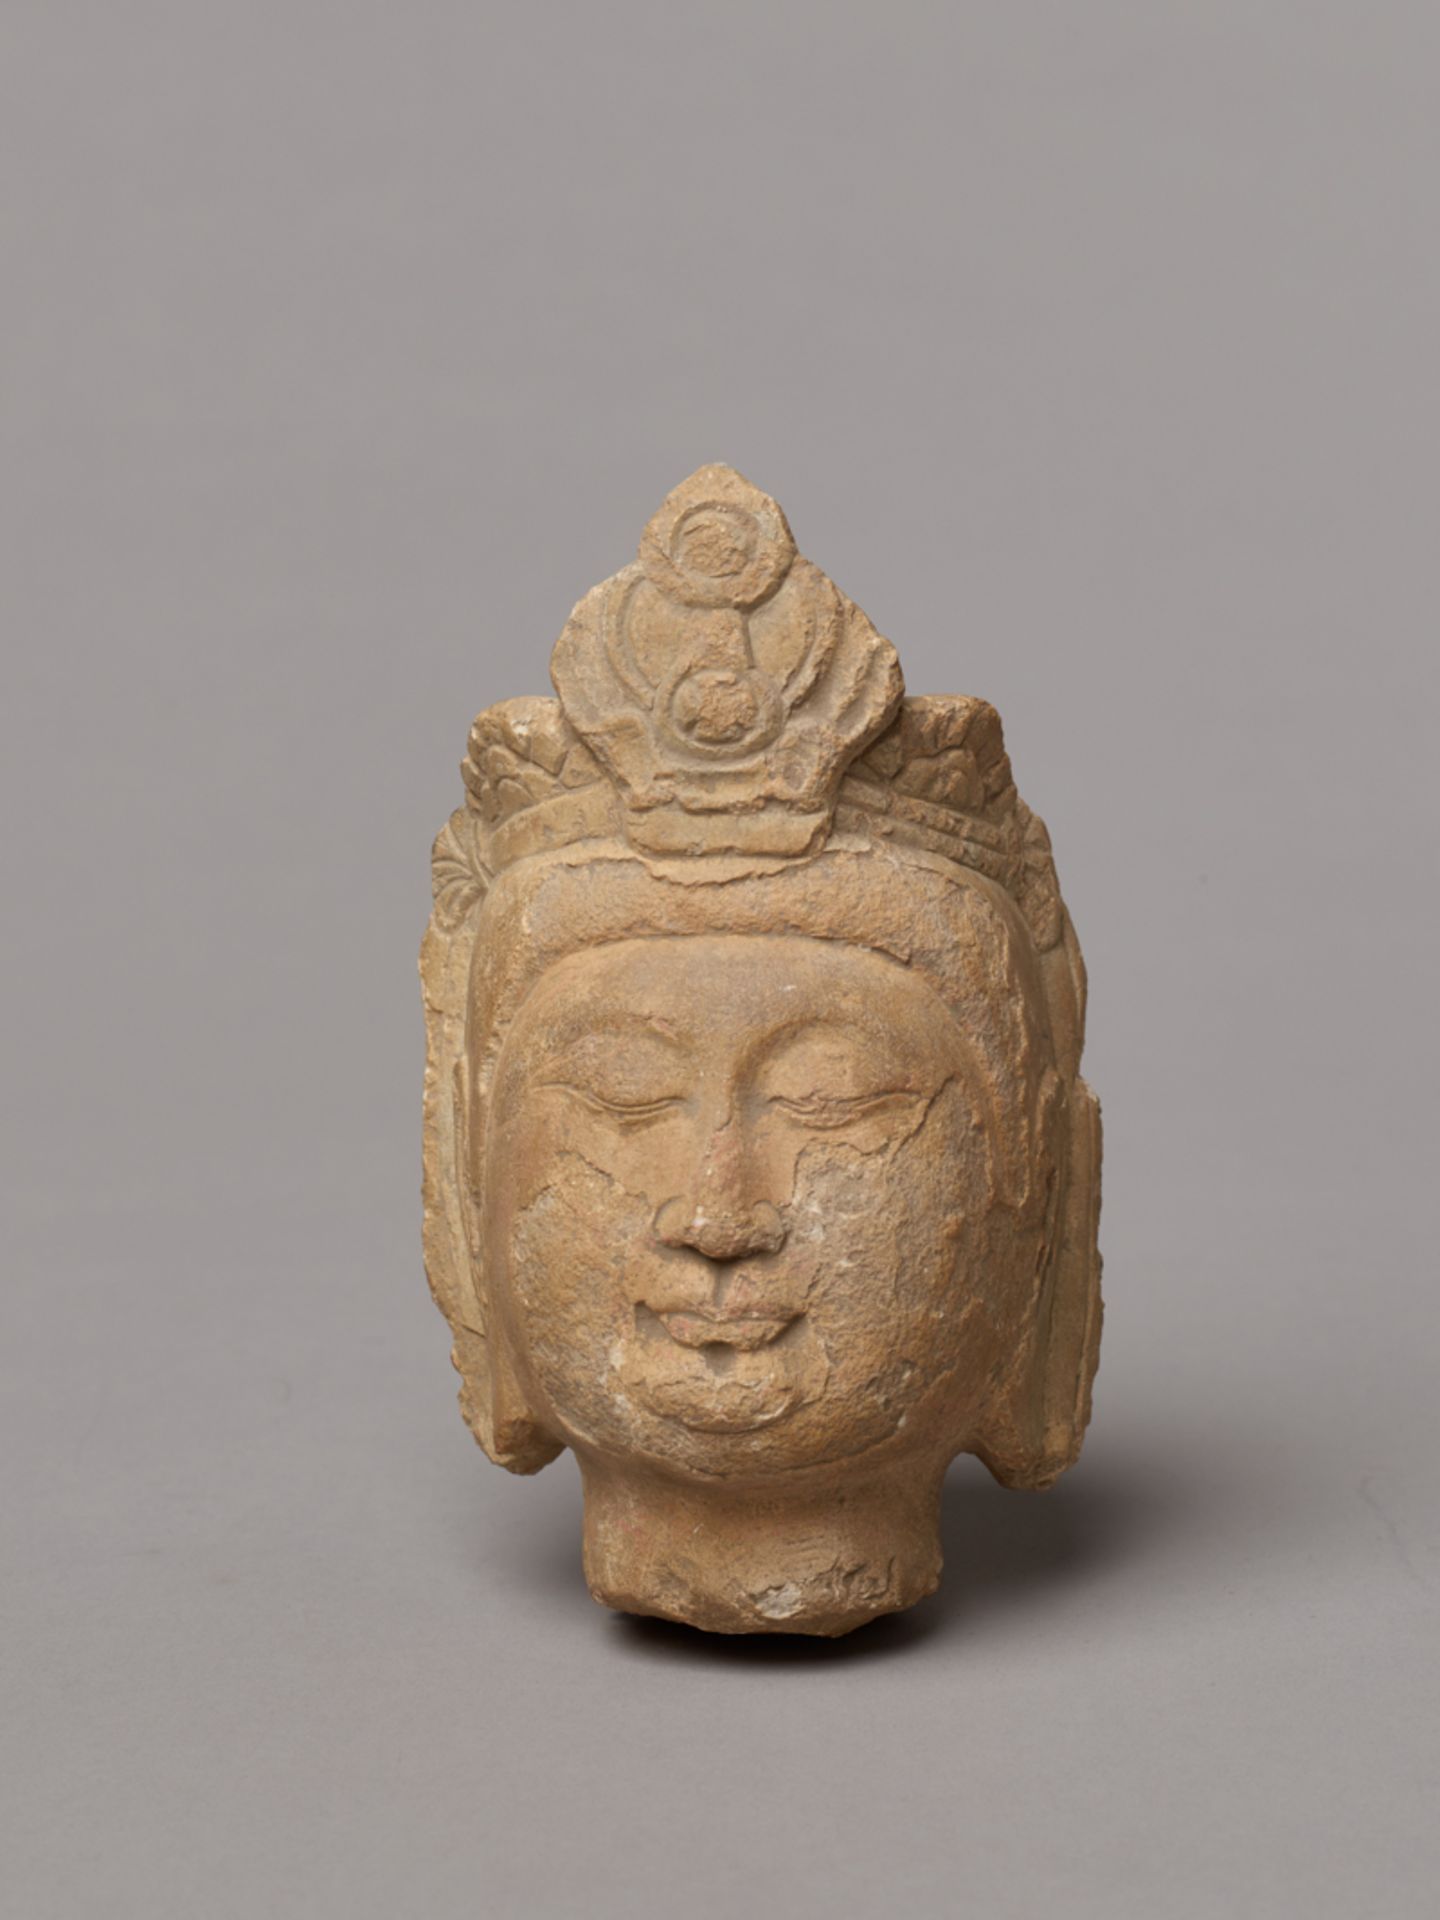 KOPF EINES BODHISATTVAGelbgrauer Stein. China, Nördliche Wei-Dynastie (386 - 534)Trotz der Alterung - Image 2 of 6